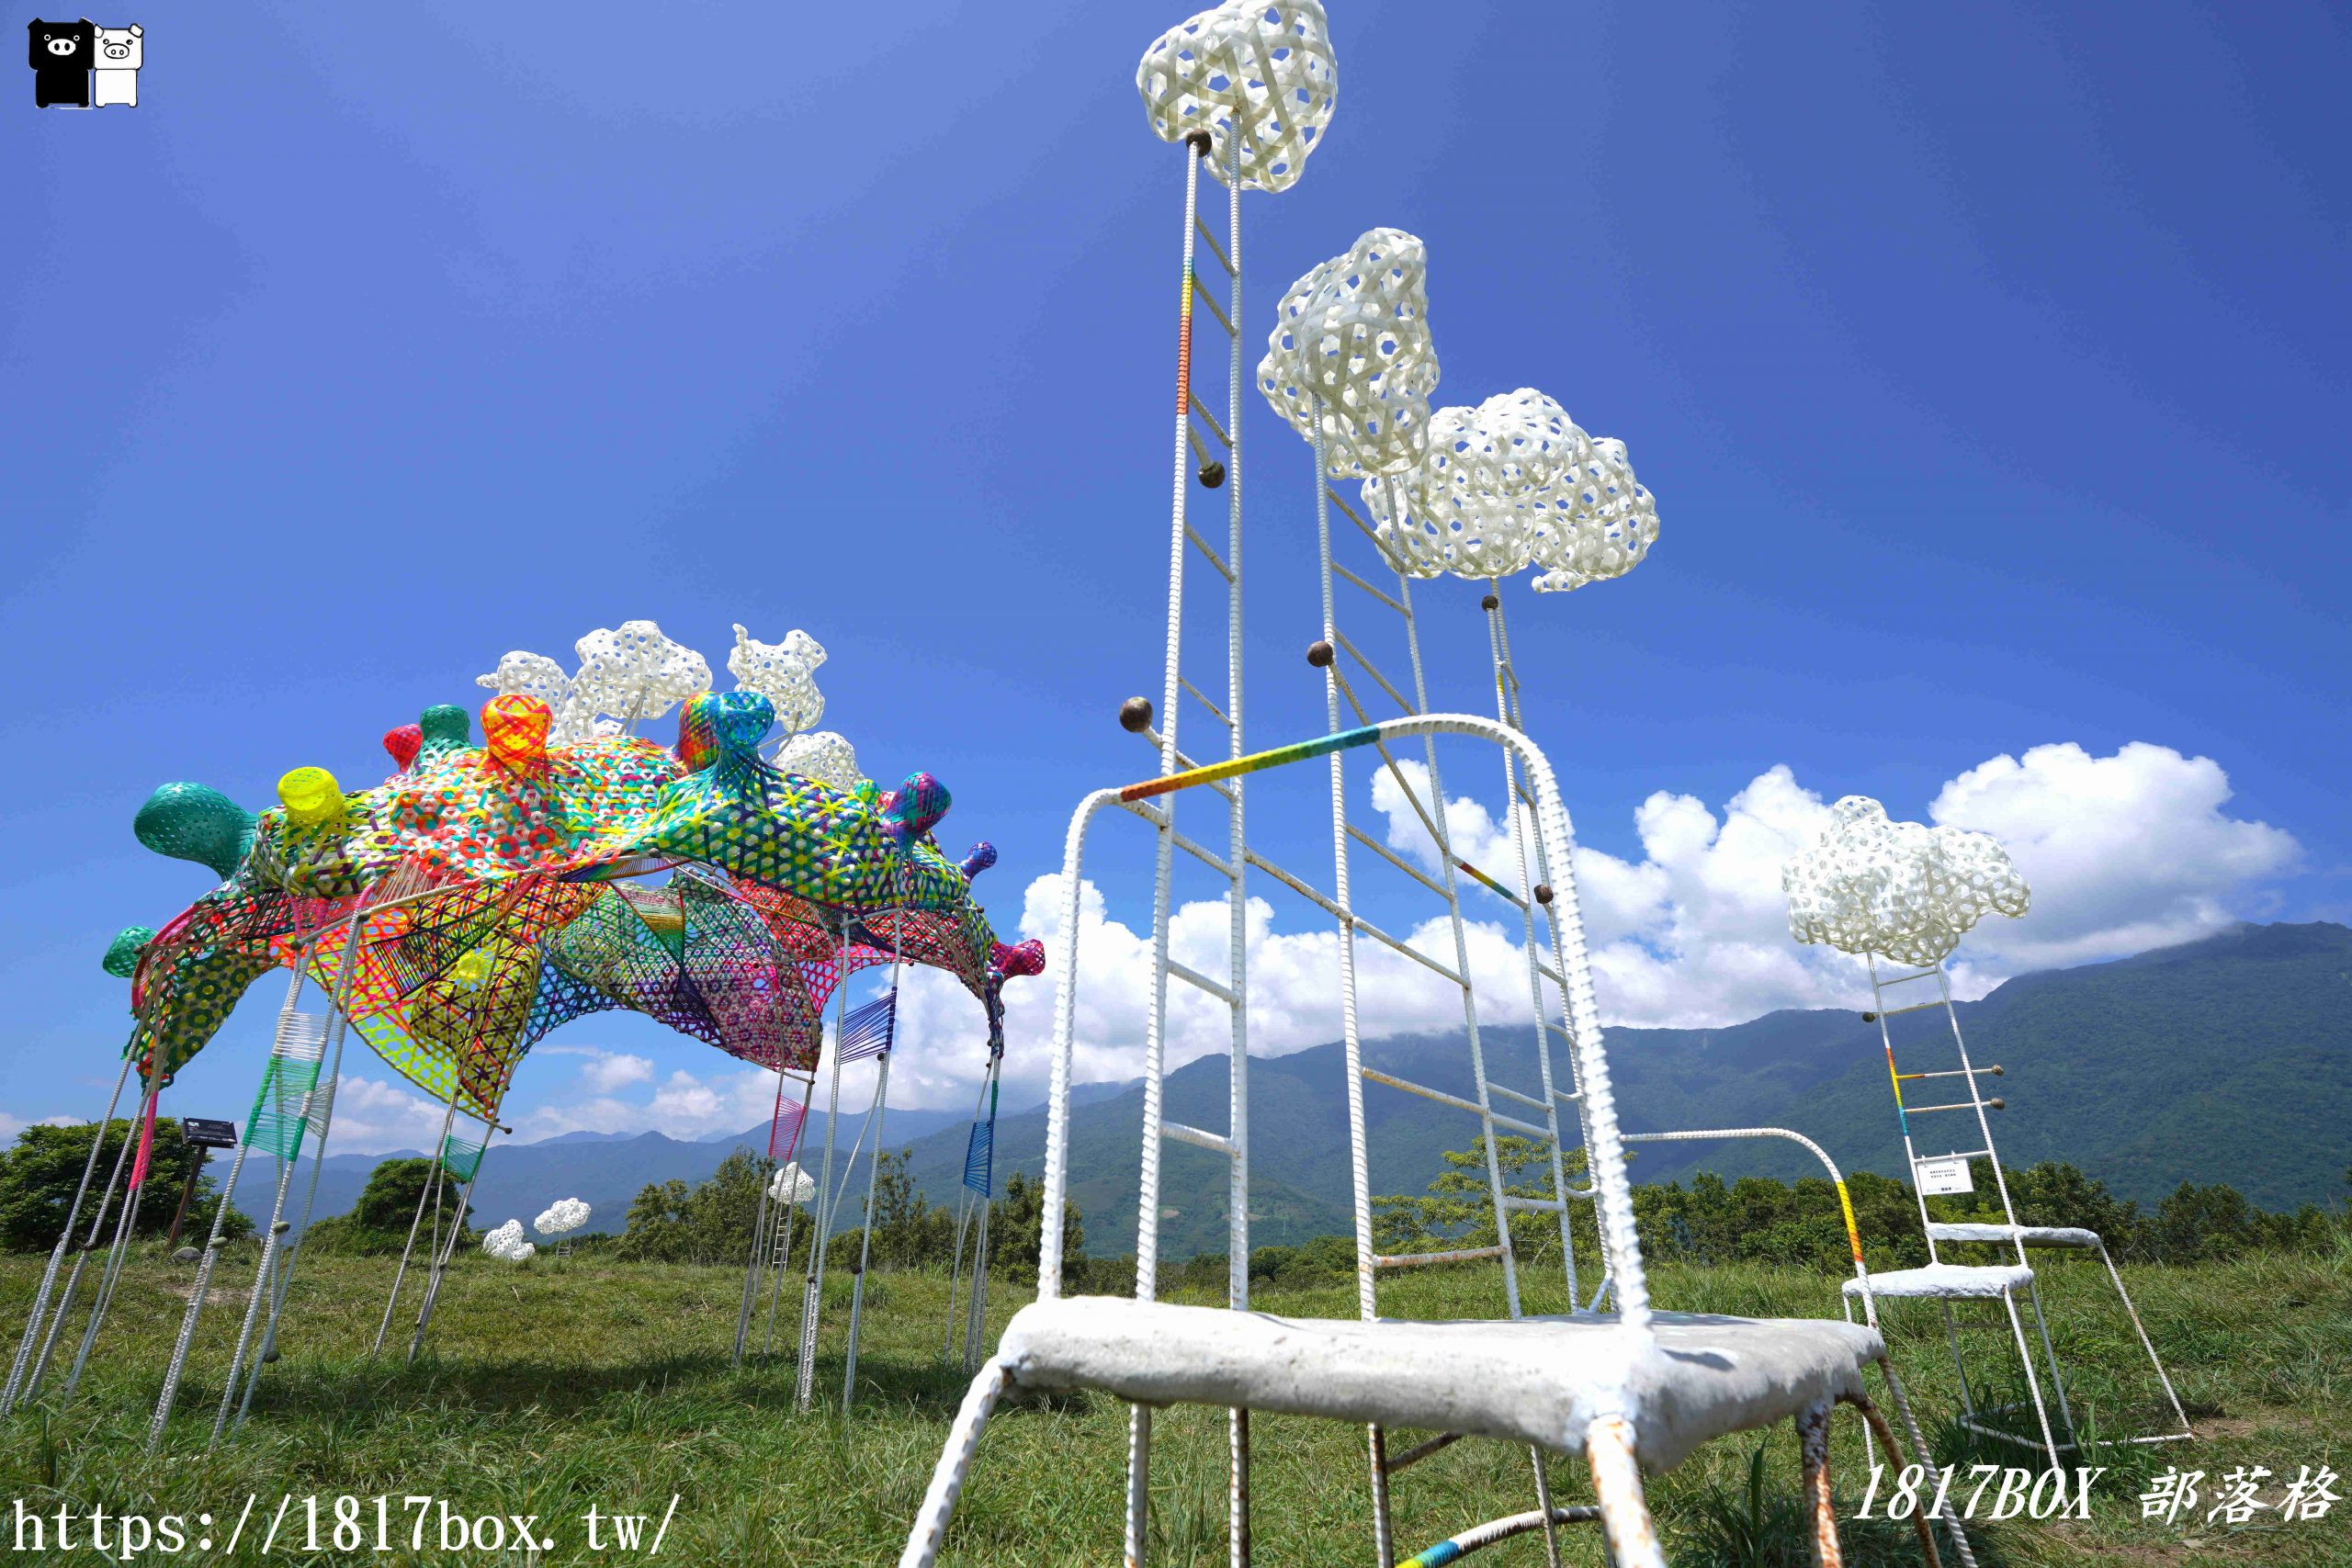 【懶人包】2021「漂鳥197-縱谷大地藝術季」。6組藝術地景創作。作品地圖